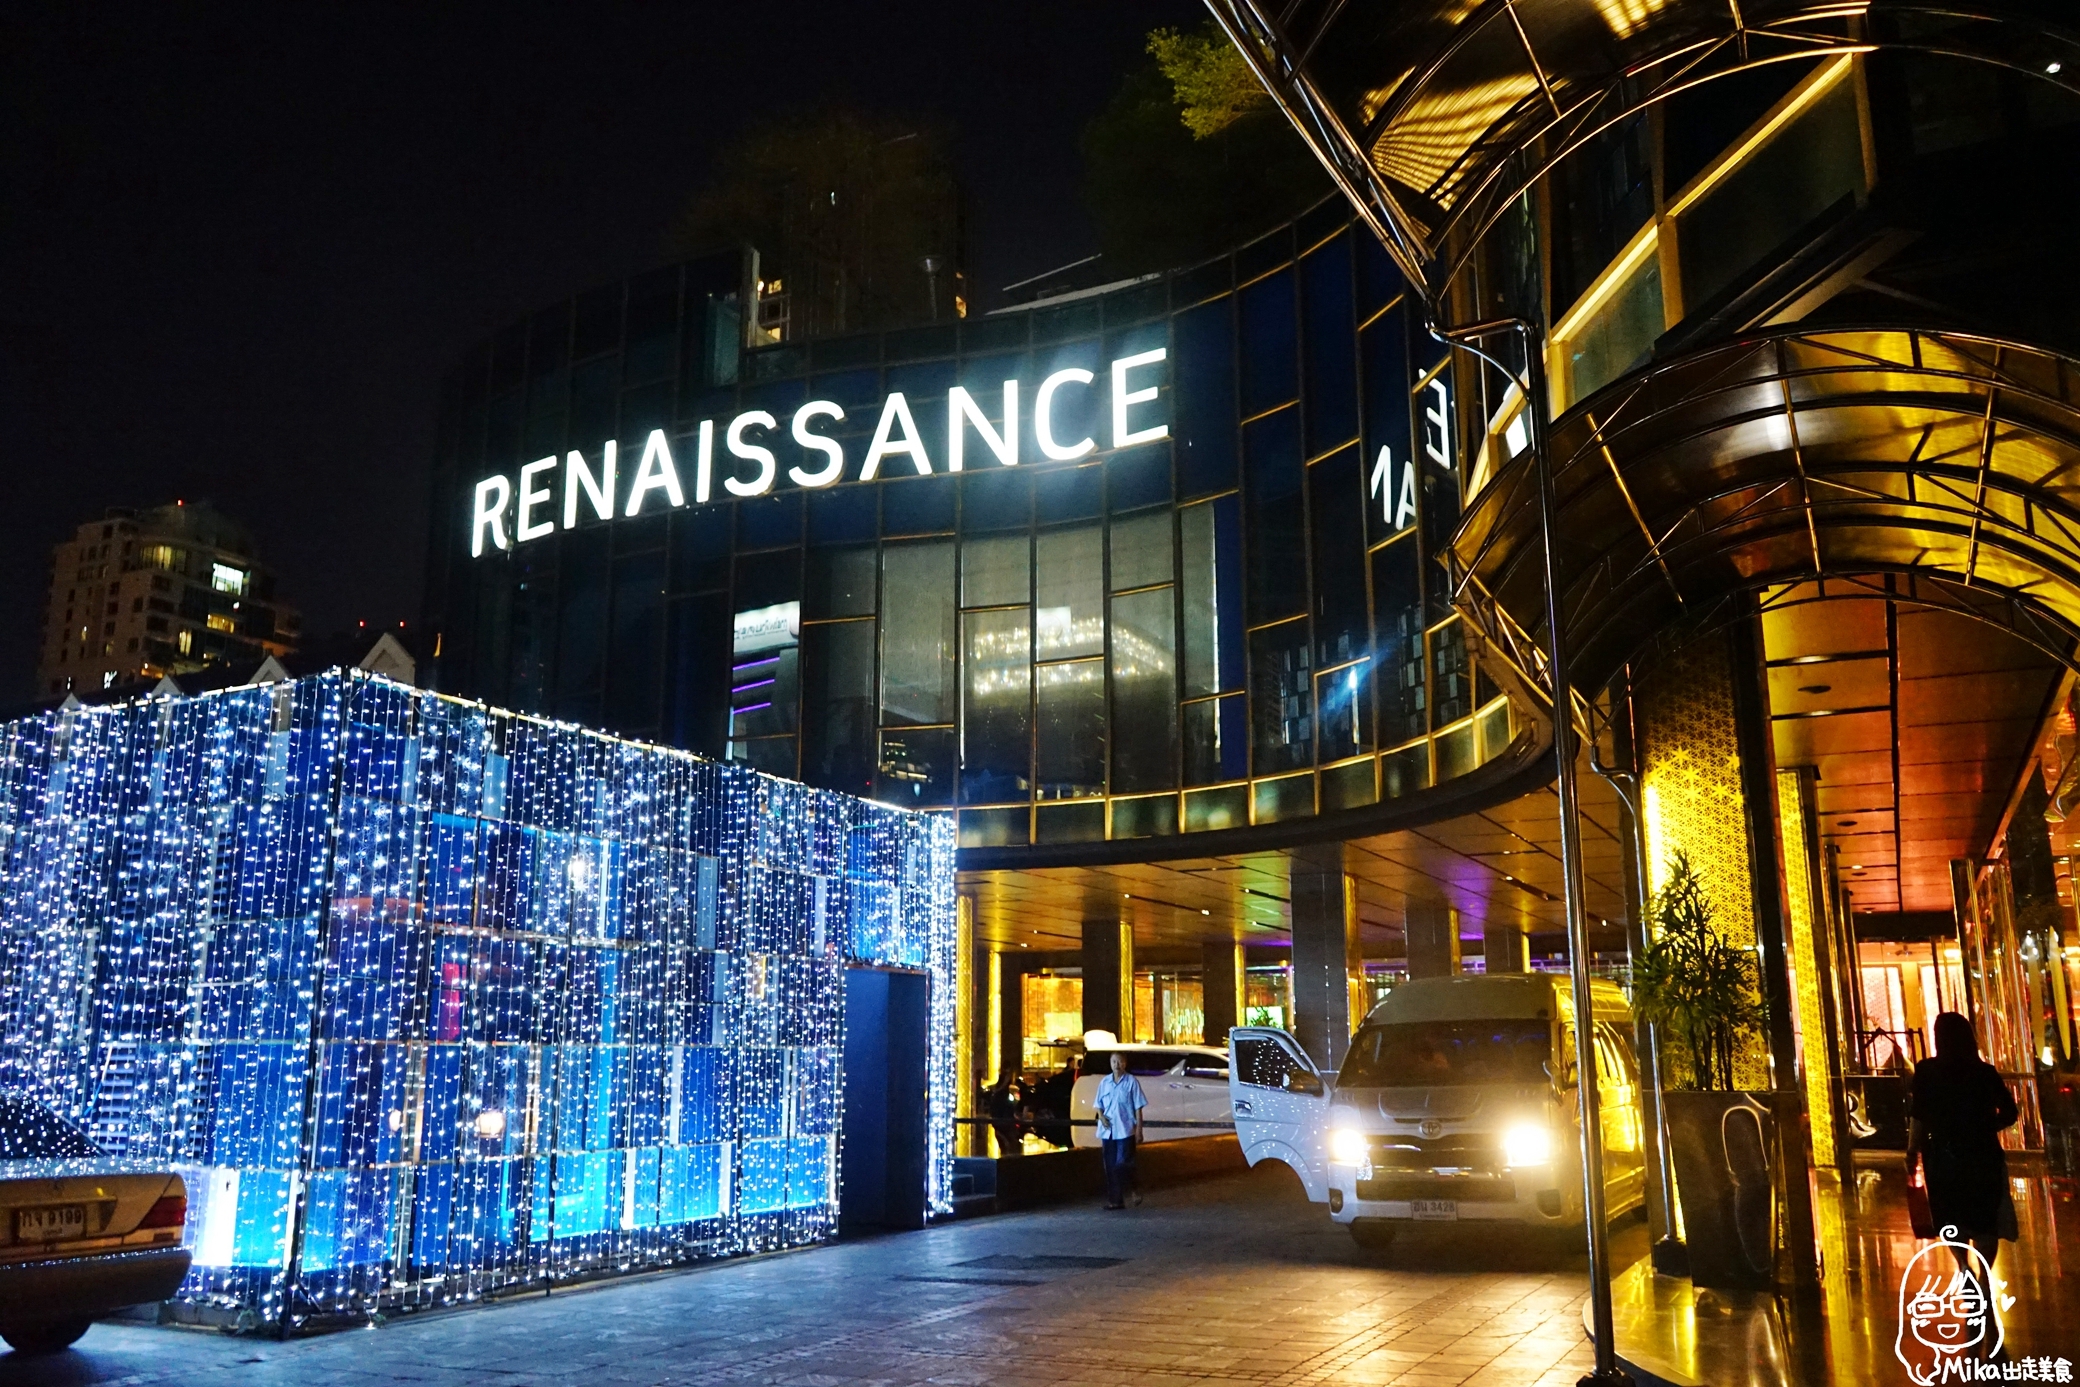 『泰國。曼谷』五星級 萬麗酒店 Renaissance BKK｜BTS奇隆站附近推薦住宿 超級精華地段 平價CP值超高 鄰近Central World Plaza、四面佛、Big C，還提供免費擦鞋服務。